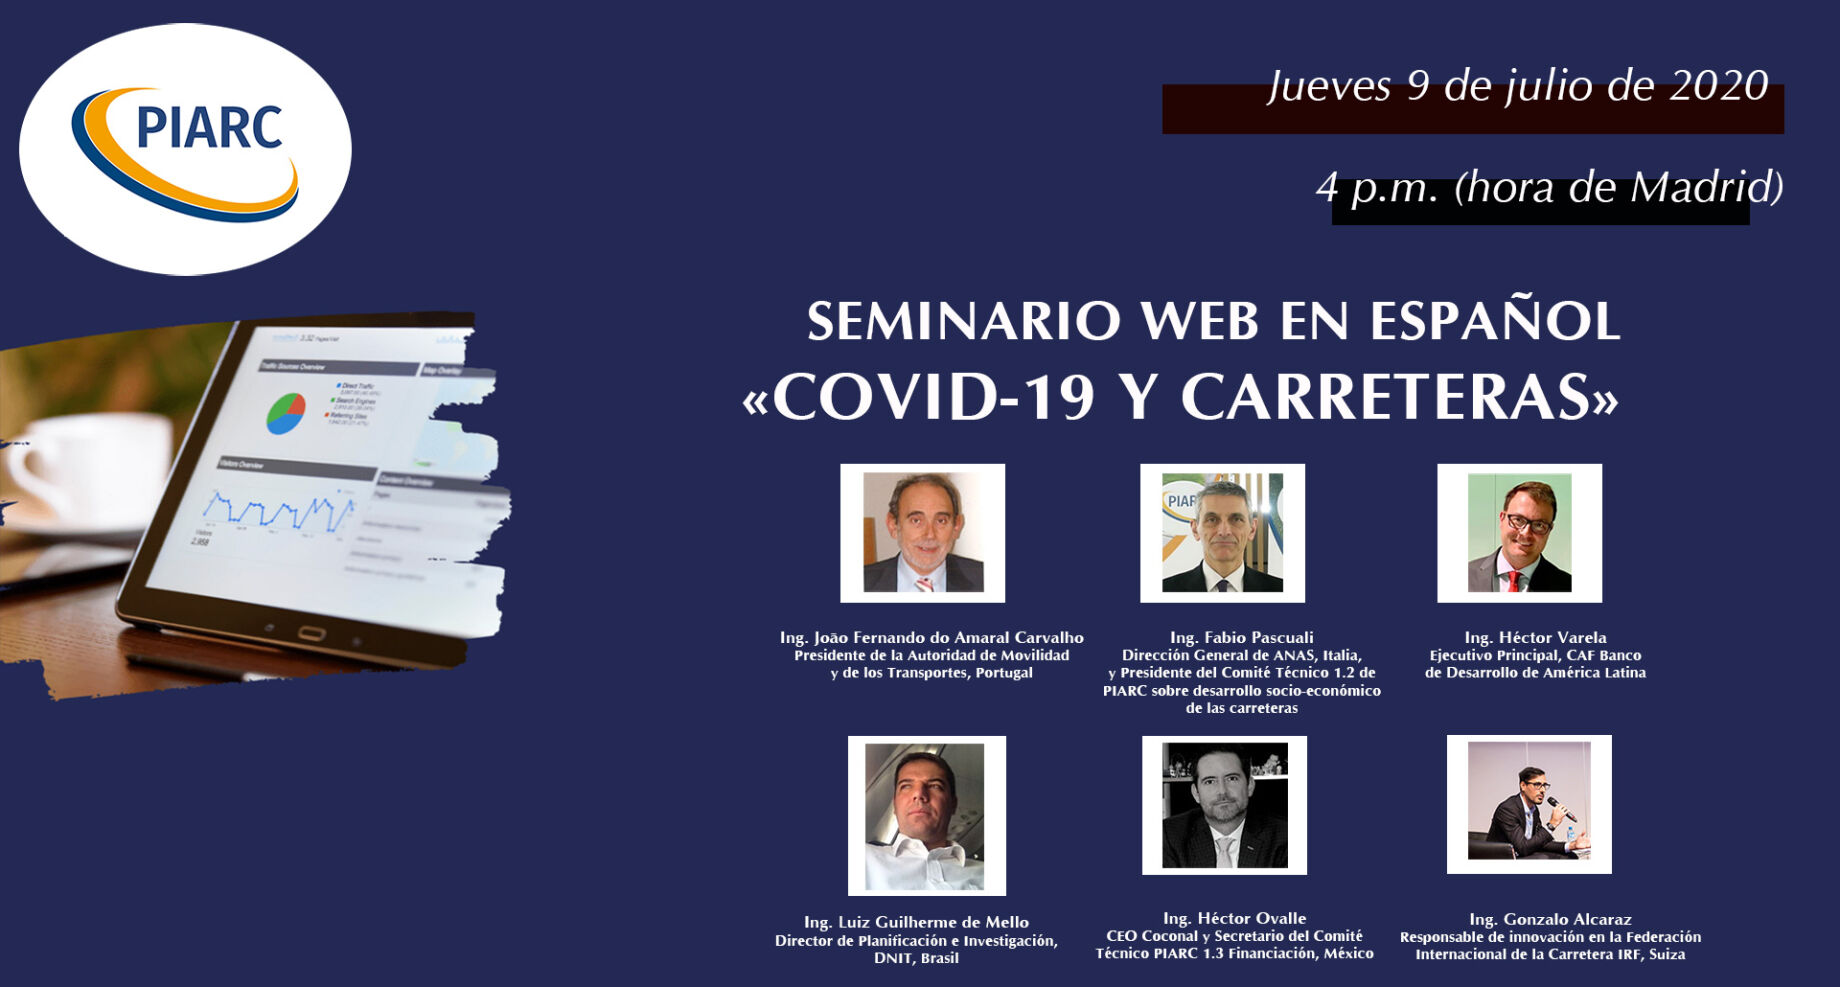 ¡Inscríbase
al próximo seminario web en español sobre COVID-19 y carreteras!